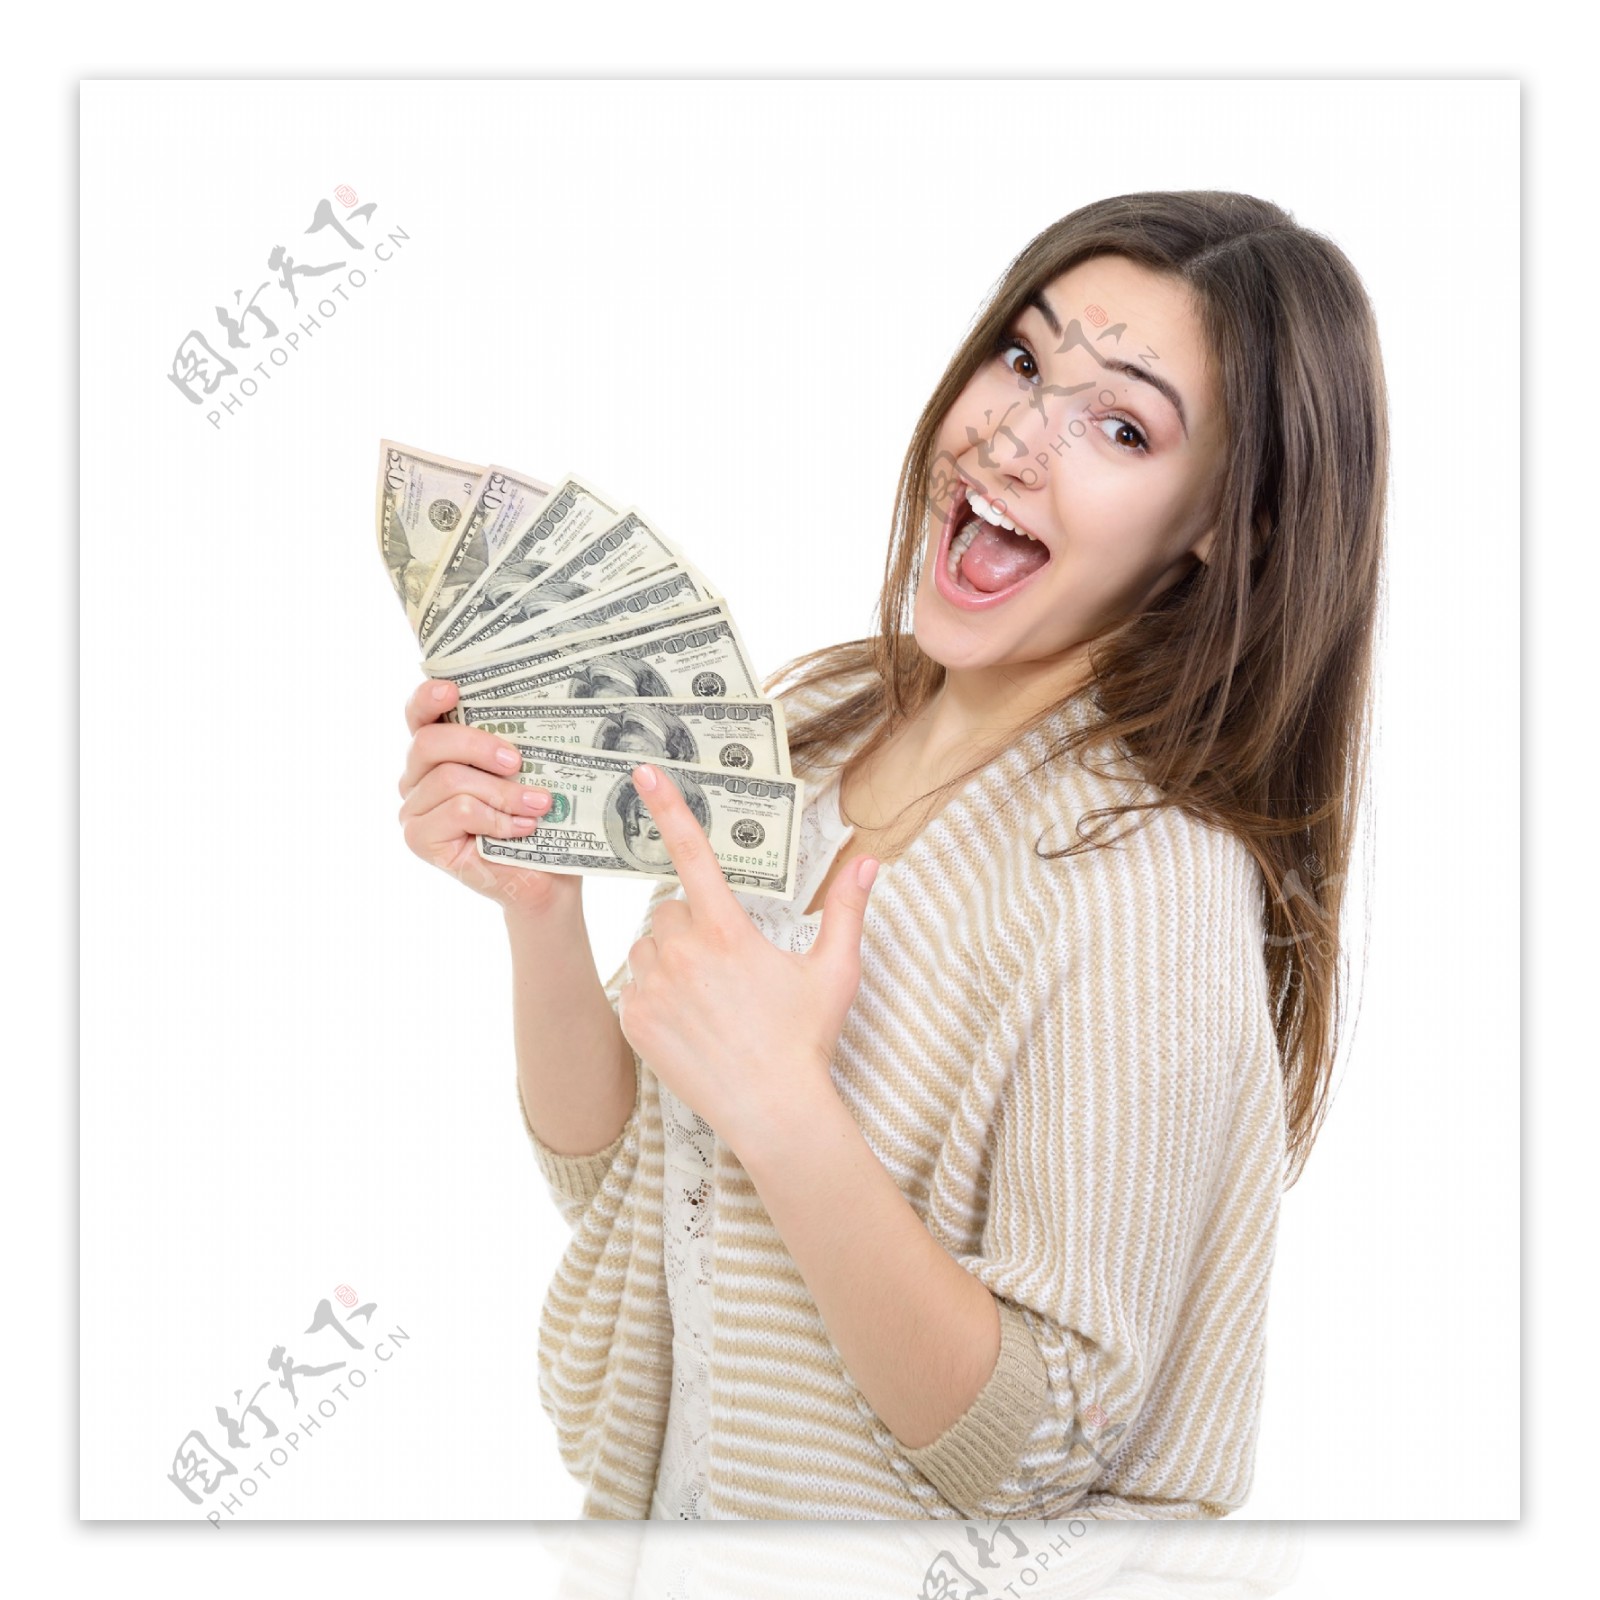 一个穿粉色衬衫的男人手里拿着美元 库存照片. 图片 包括有 财务, 美元, 女演员, 概念, 负债, 商务 - 182362024